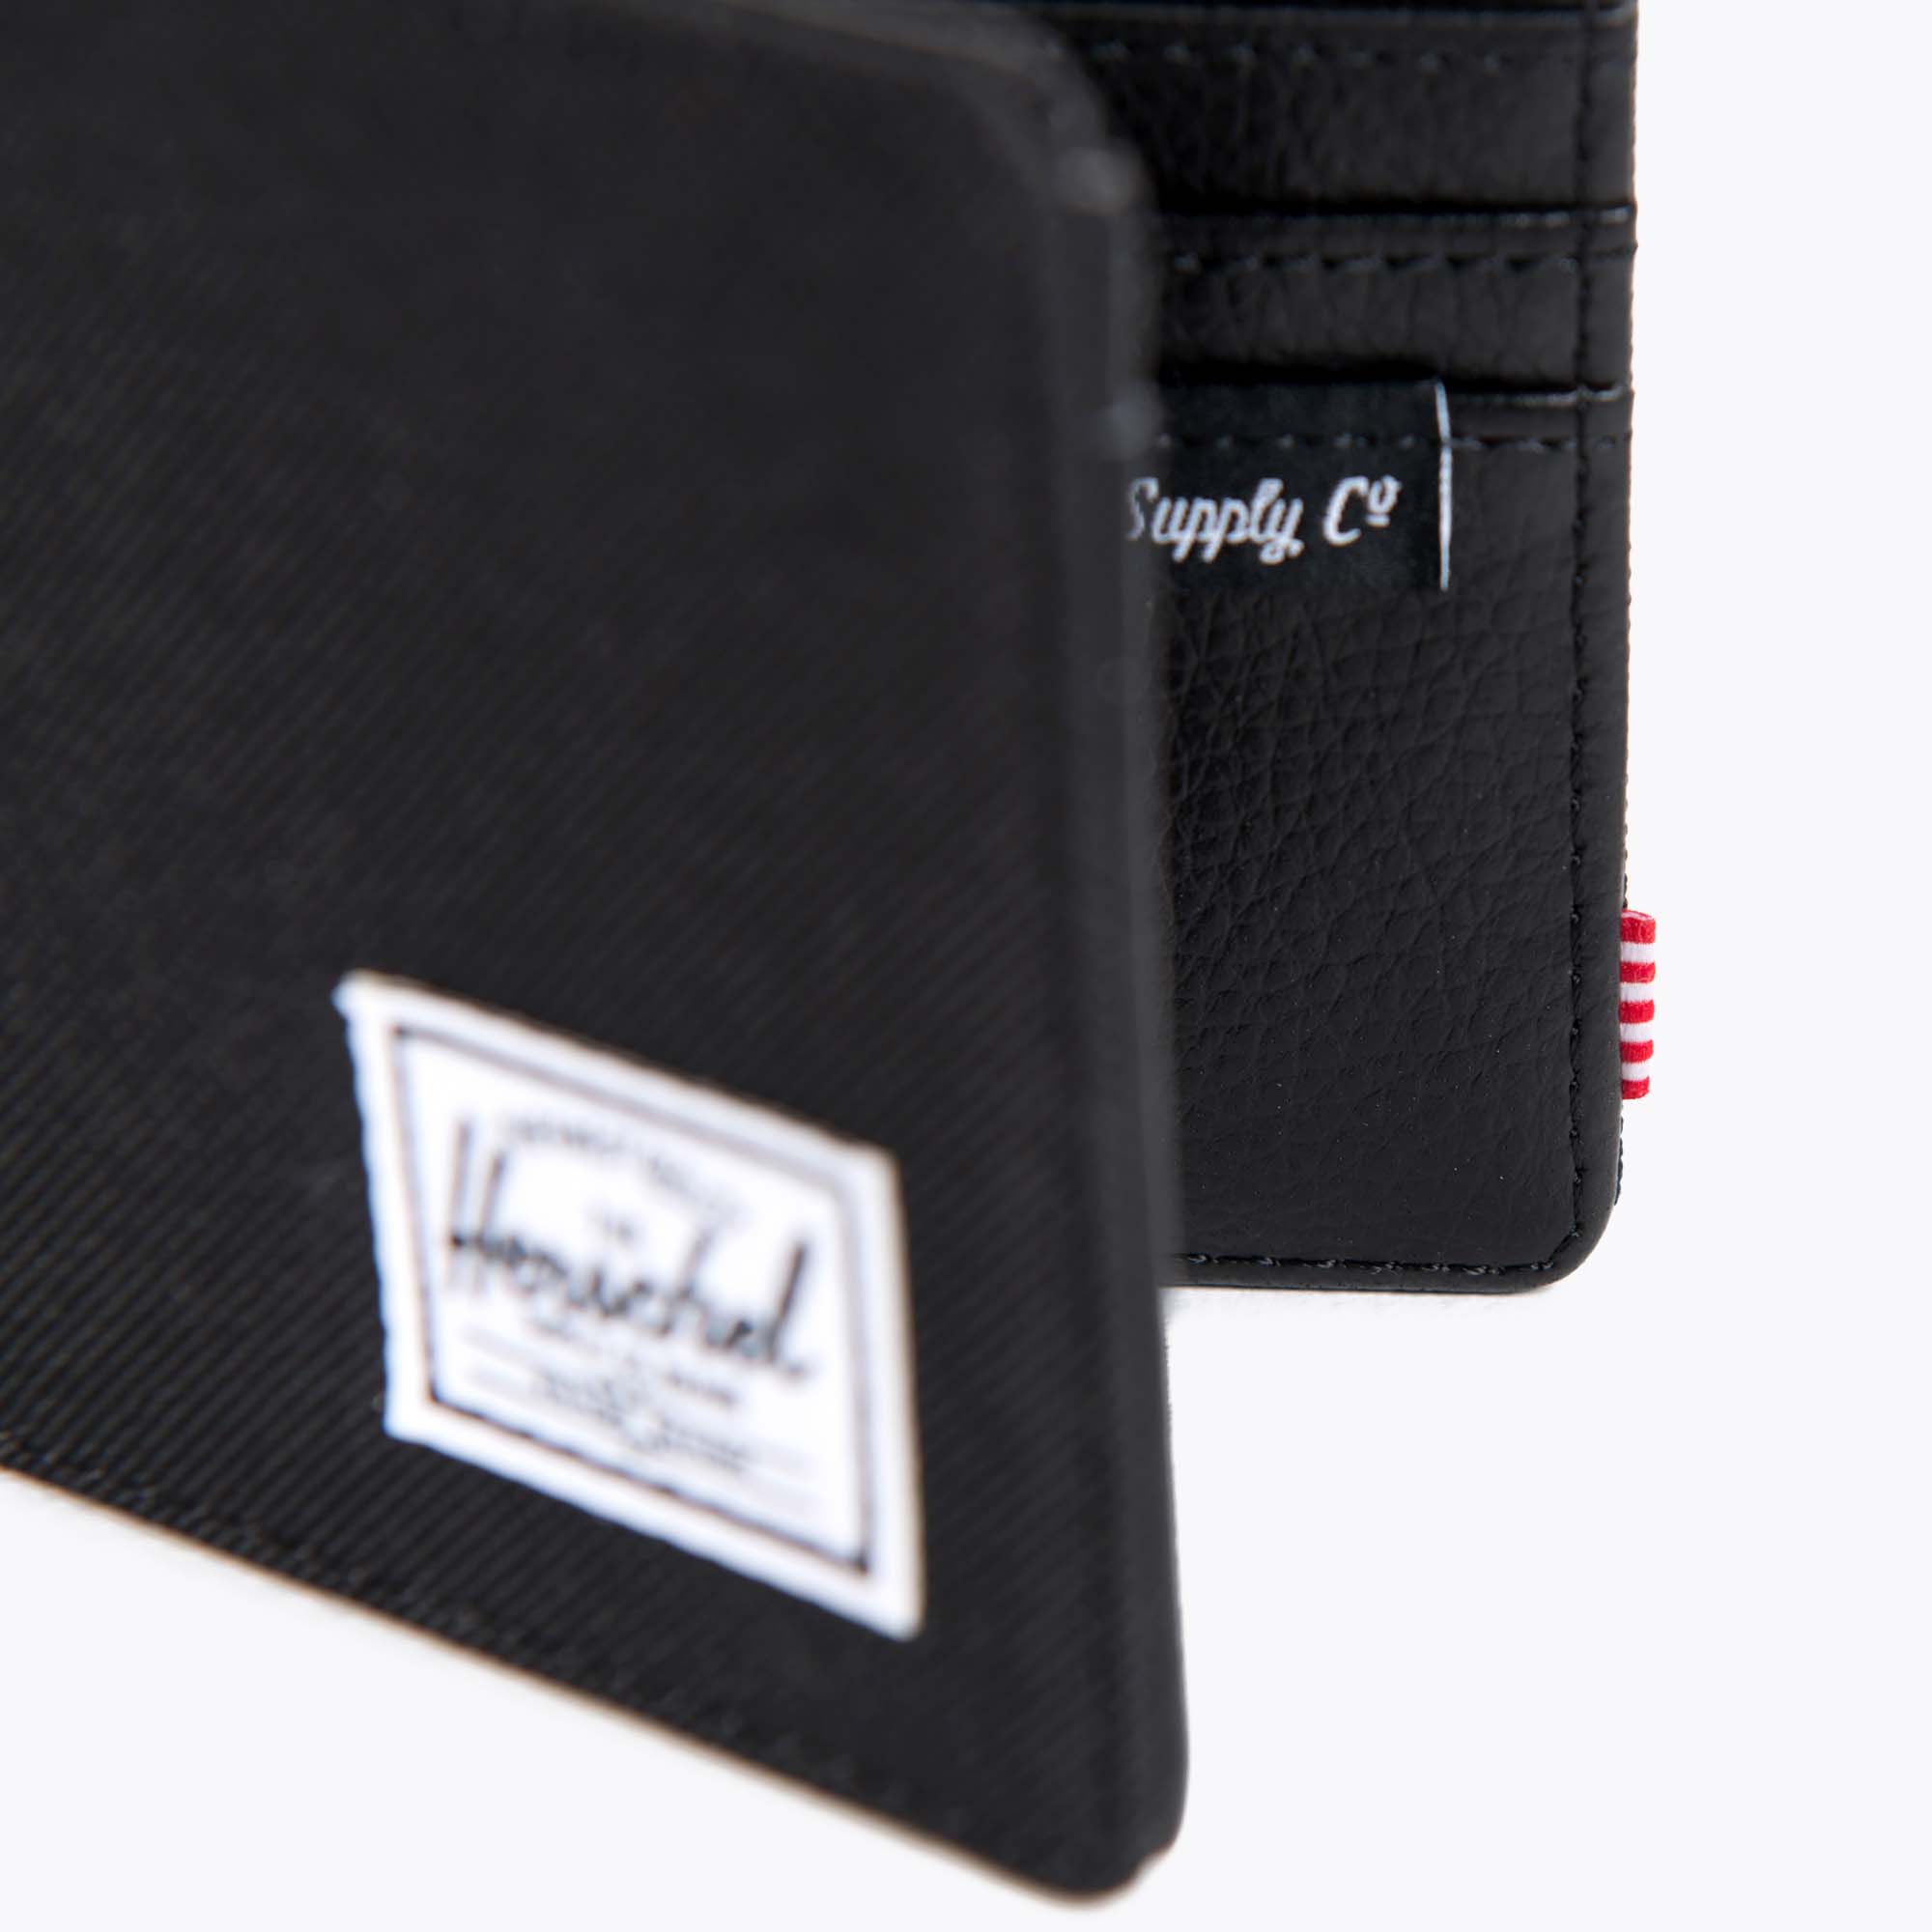 Herschel Mens Hank RFID Bi-fold Leather Wallet